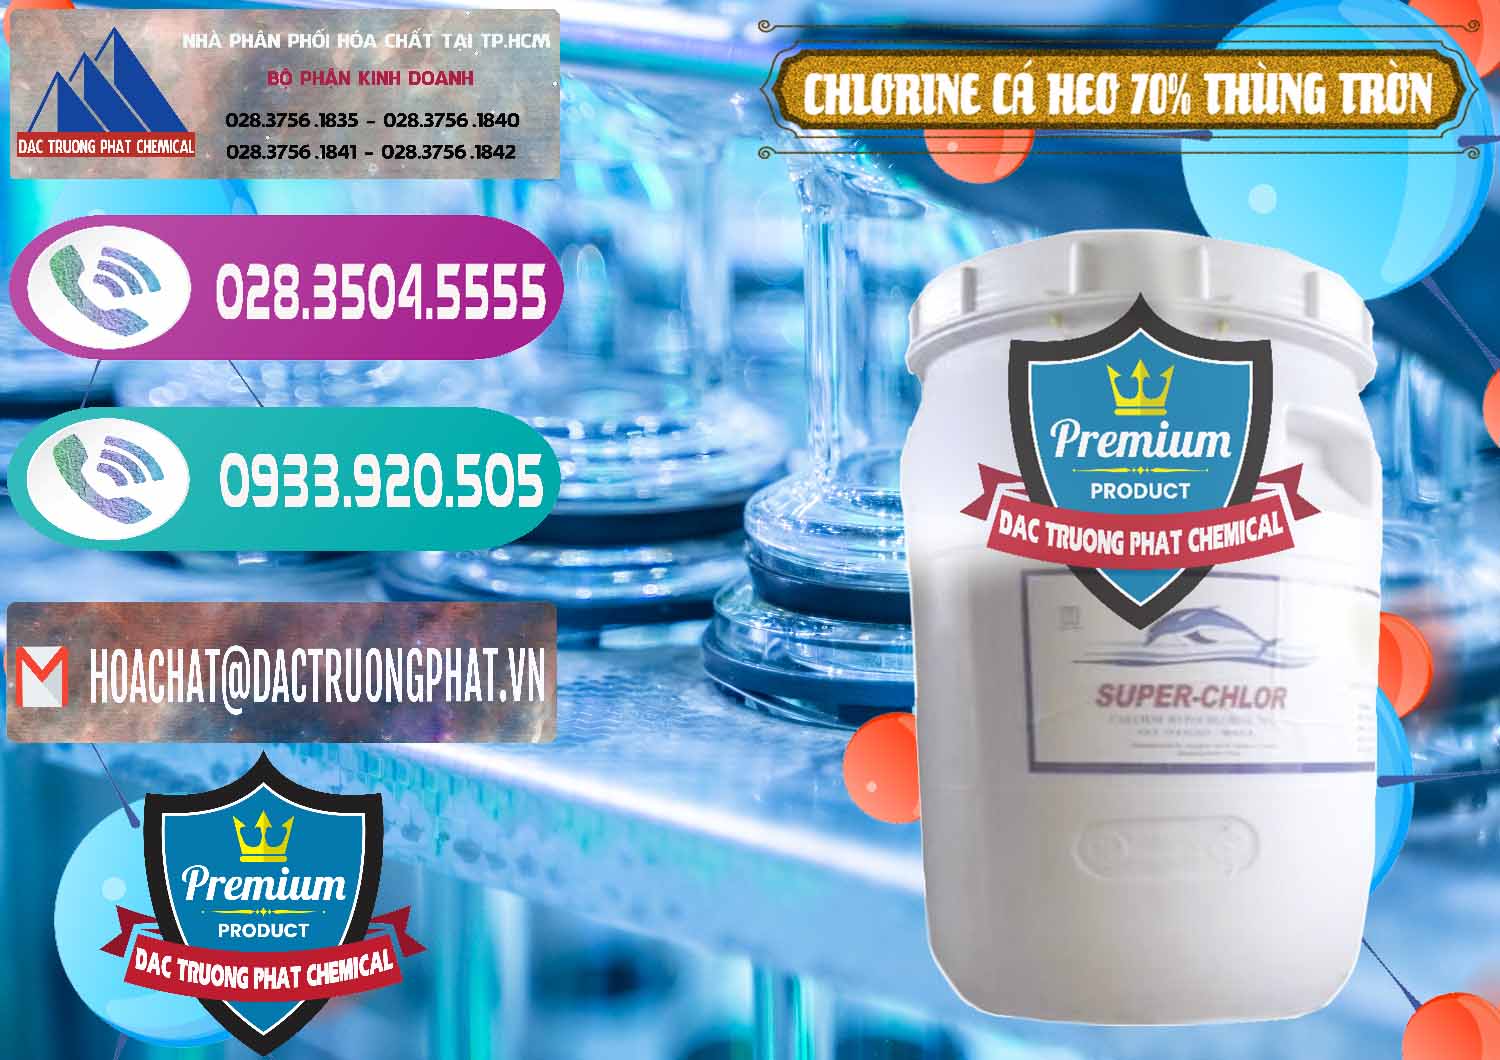 Chuyên bán _ cung cấp Clorin - Chlorine Cá Heo 70% Super Chlor Thùng Tròn Nắp Trắng Trung Quốc China - 0239 - Đơn vị chuyên kinh doanh & cung cấp hóa chất tại TP.HCM - hoachatxulynuoc.com